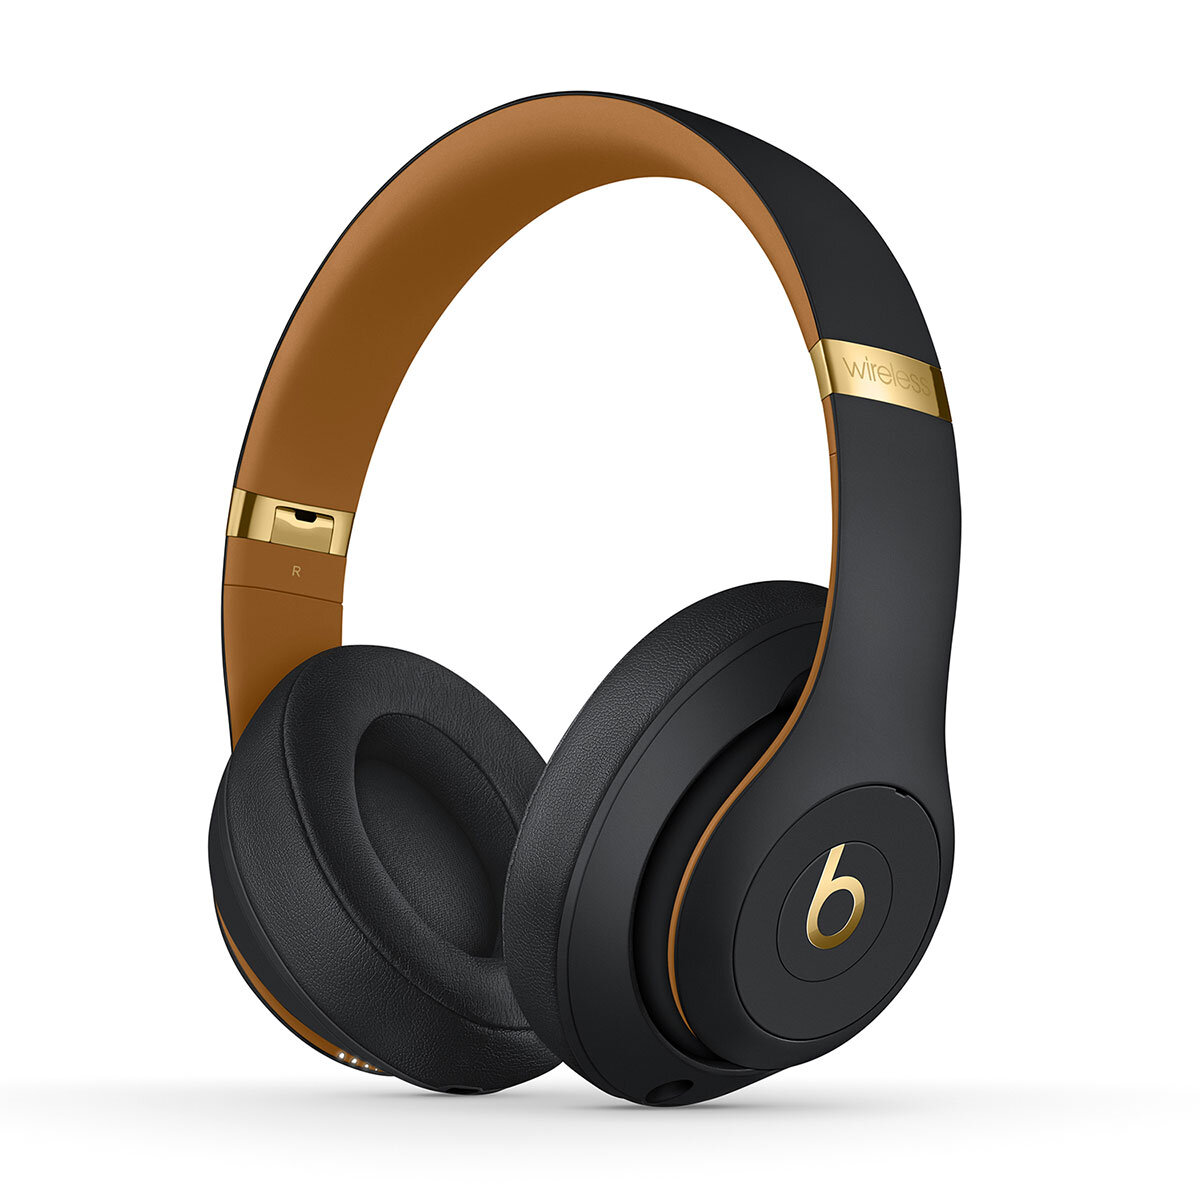 Buy BeatsStudio3, Beats Studio3 Wireless Headphones at costco.co.uk